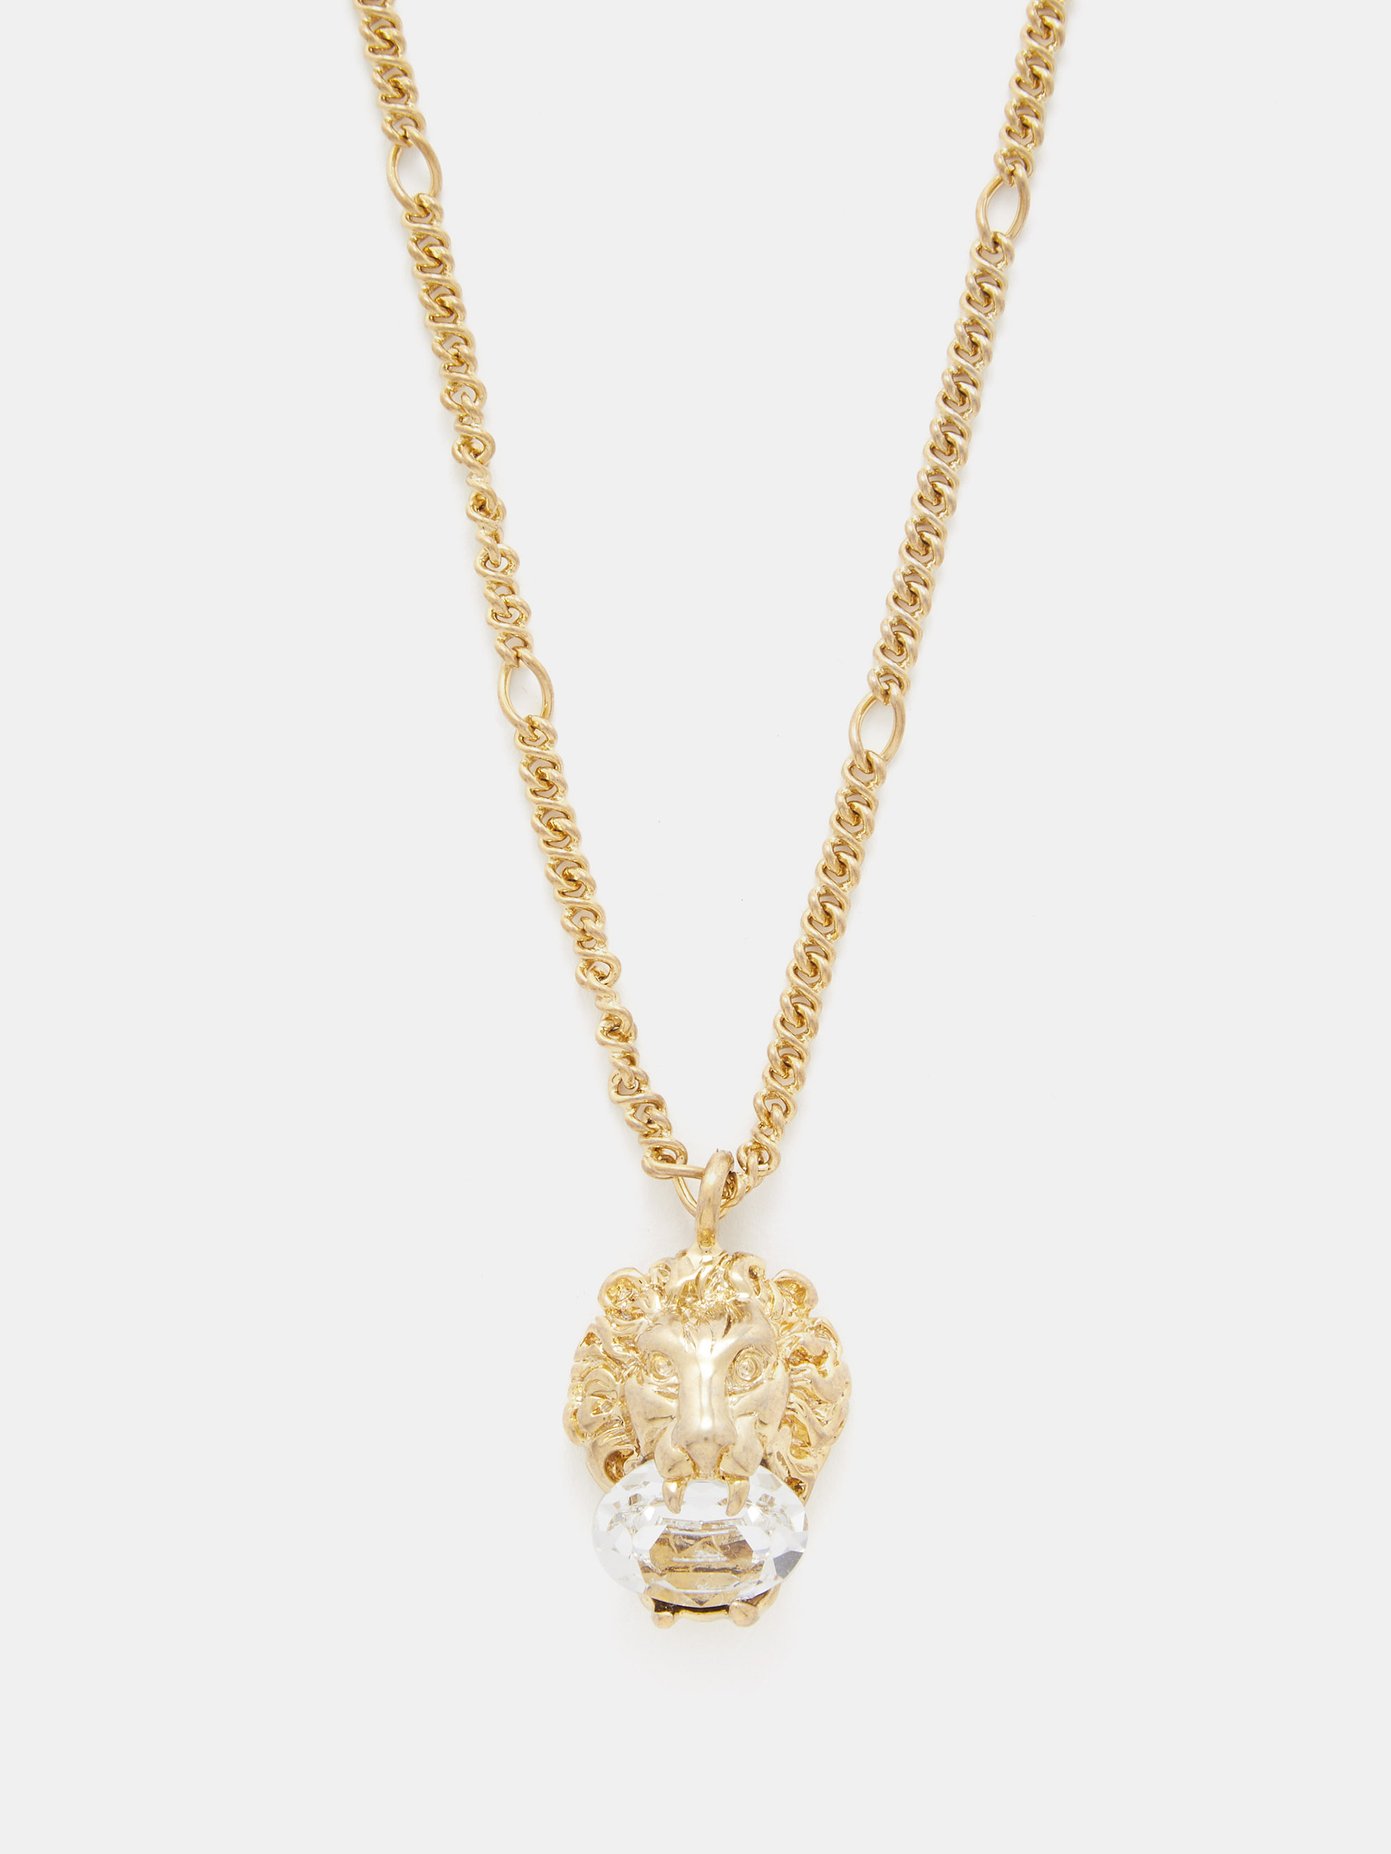 lion gucci necklace